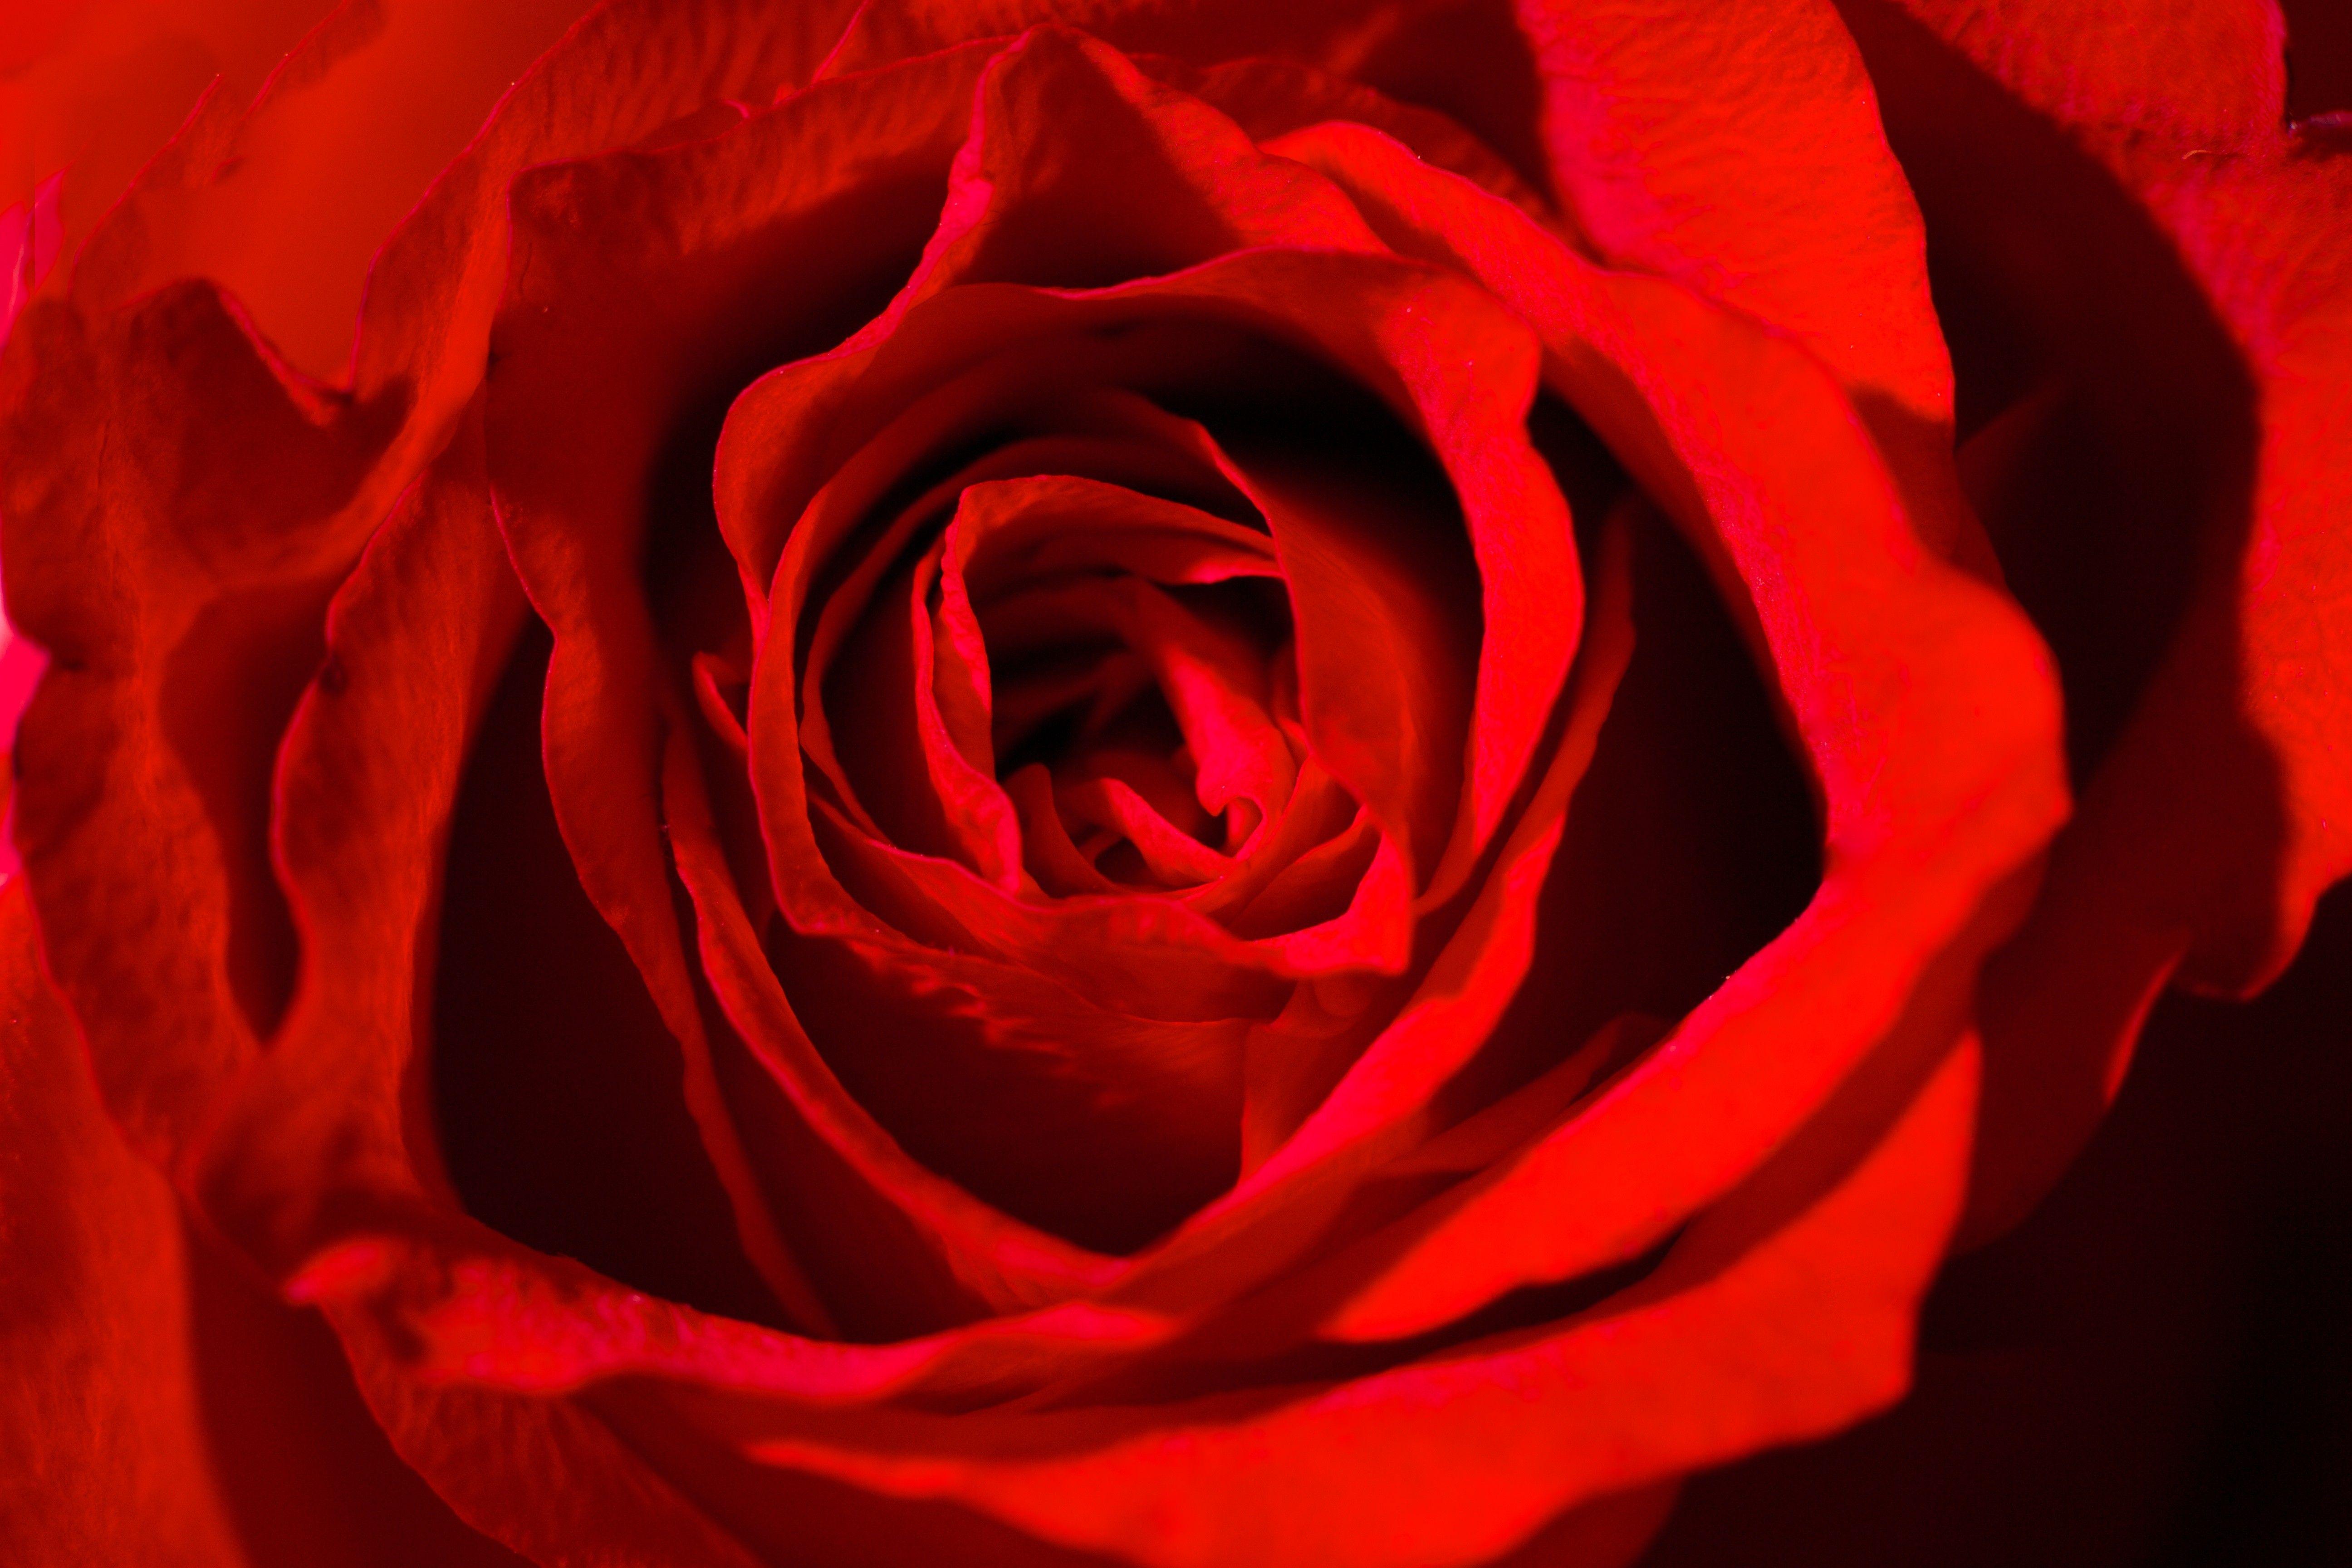 Flowers: Roses Rose Red Flowers Vibrant Amazing Flower Desktop